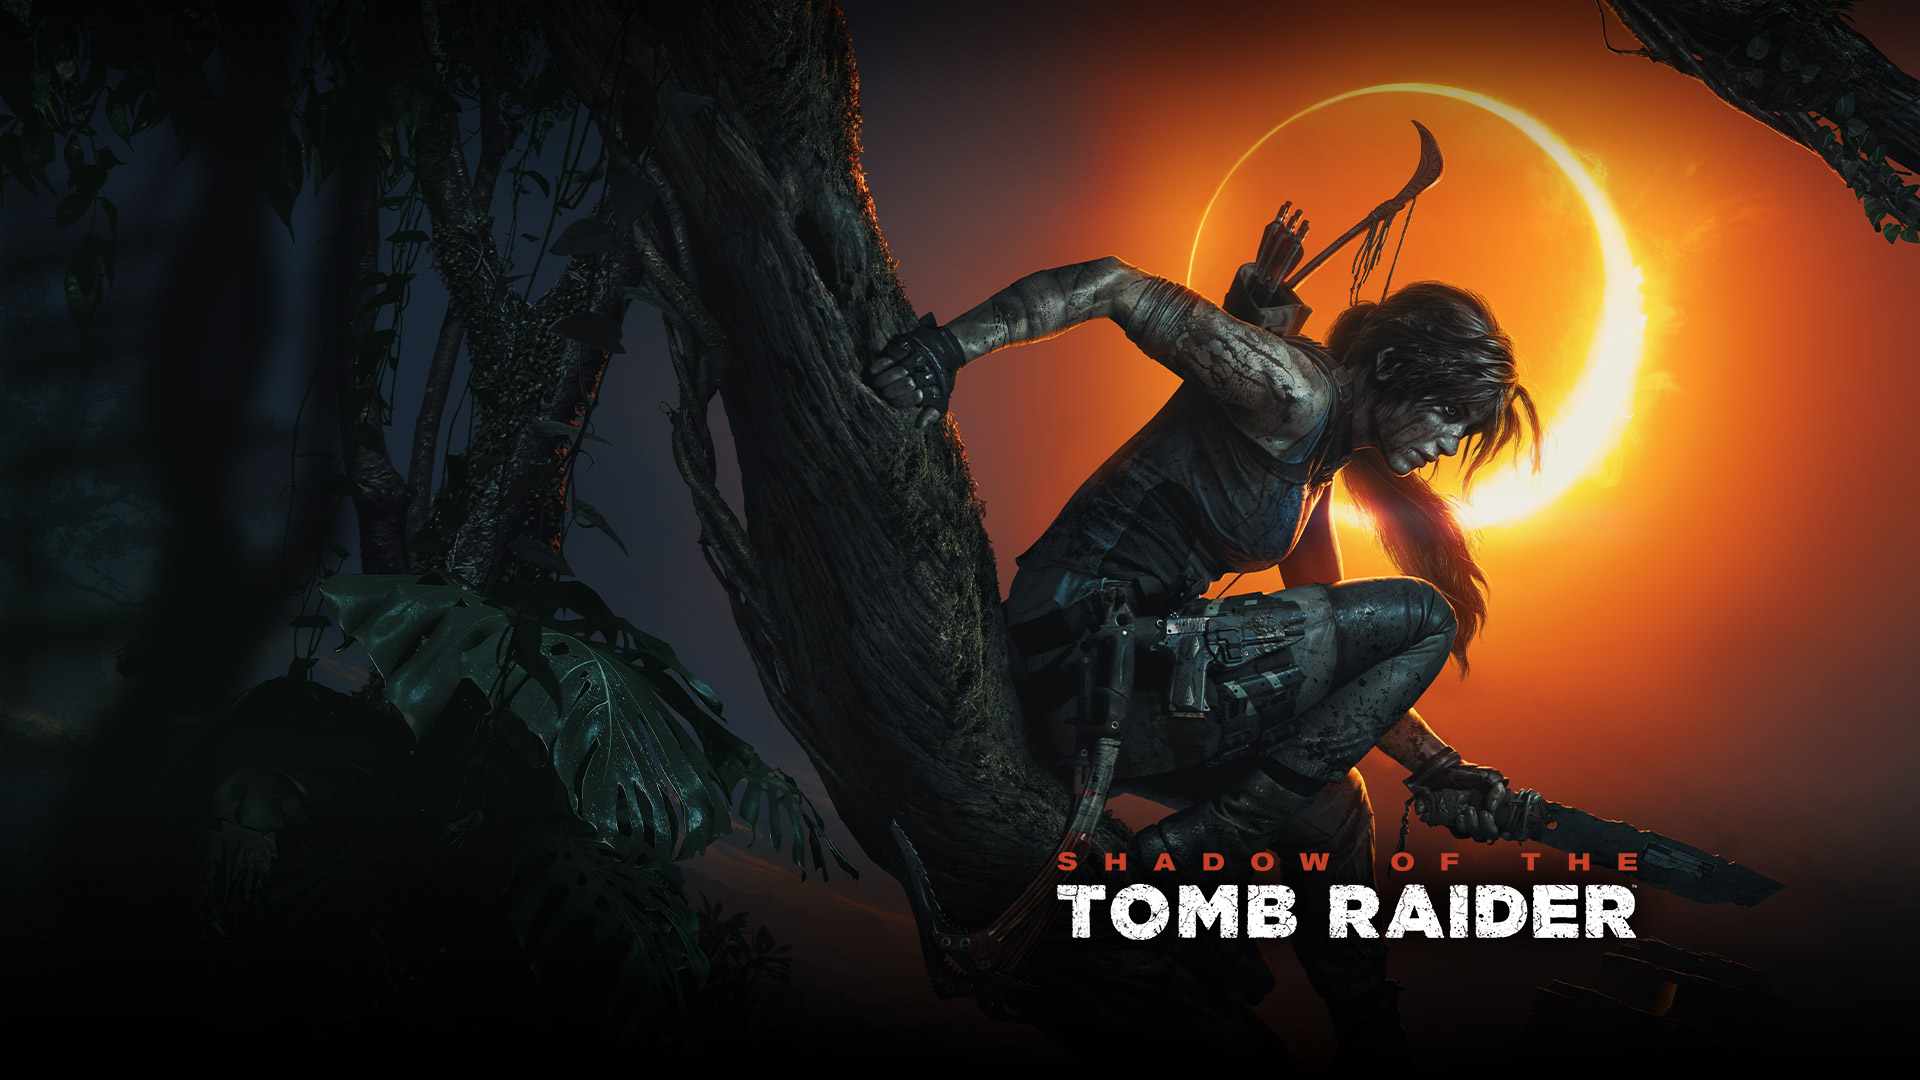 Shadow of the Tomb Raider, Лара Крофт с ножом в руке сидит на ветви дерева на фоне солнечного затмения